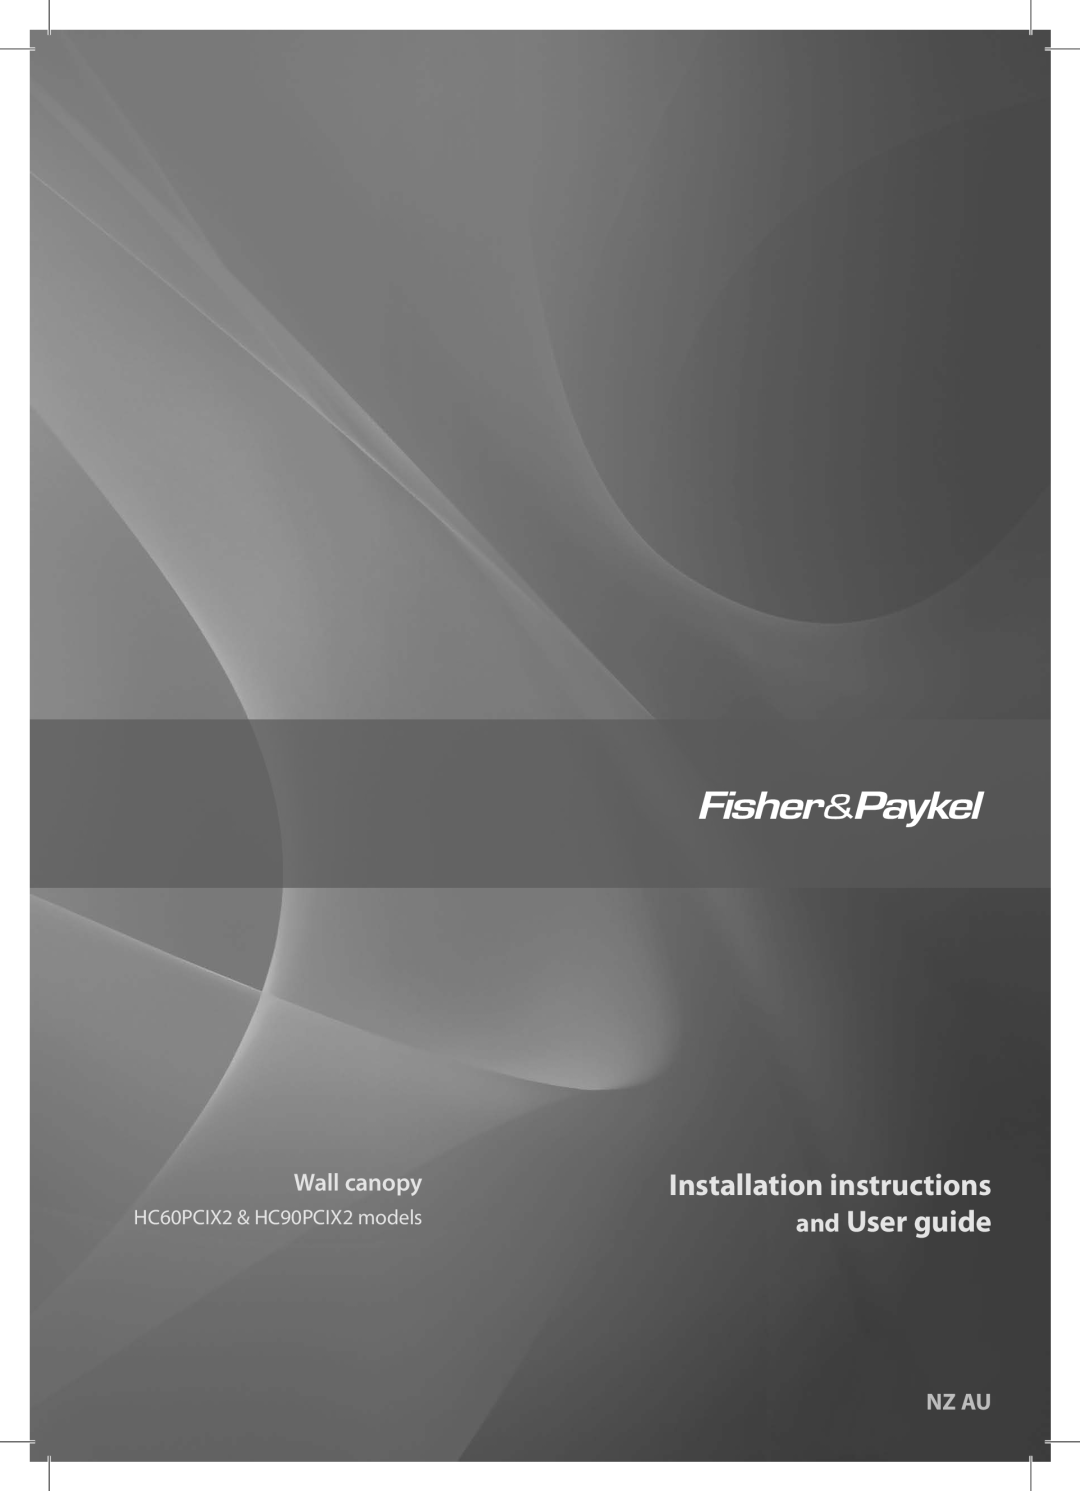 Fisher & Paykel HC60PCIX2 installation instructions Installation instructions, and User guide, Wall canopy, Nz Au 